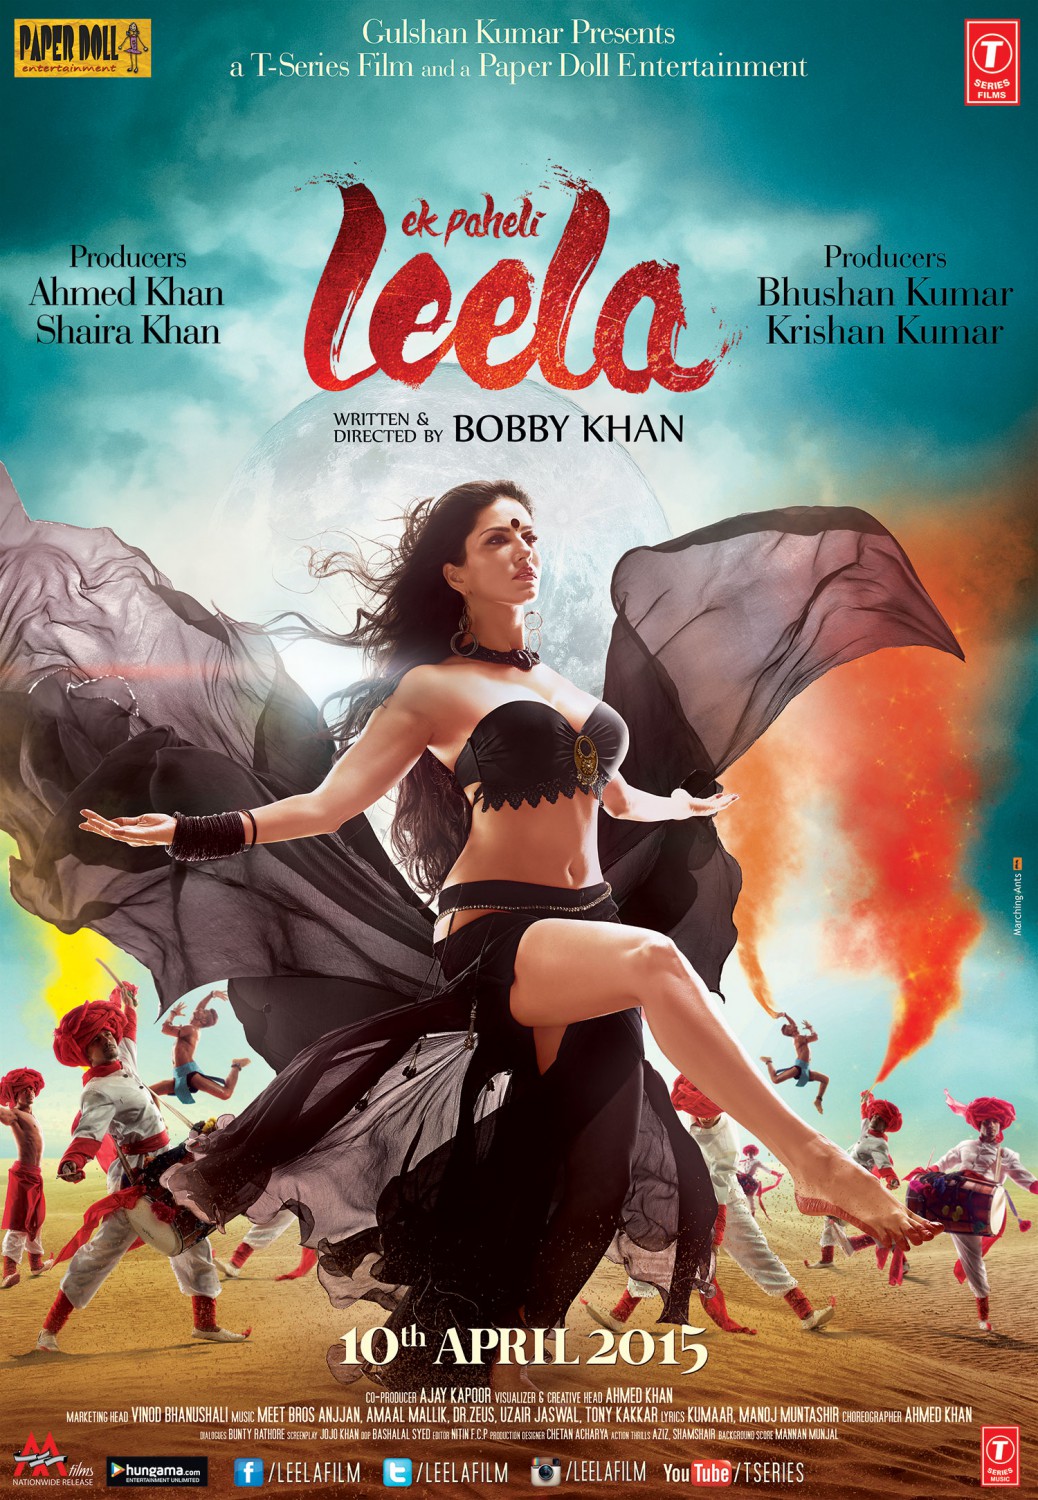 Extra Large Movie Poster Image for Ek Paheli Leela (#2 of 4)